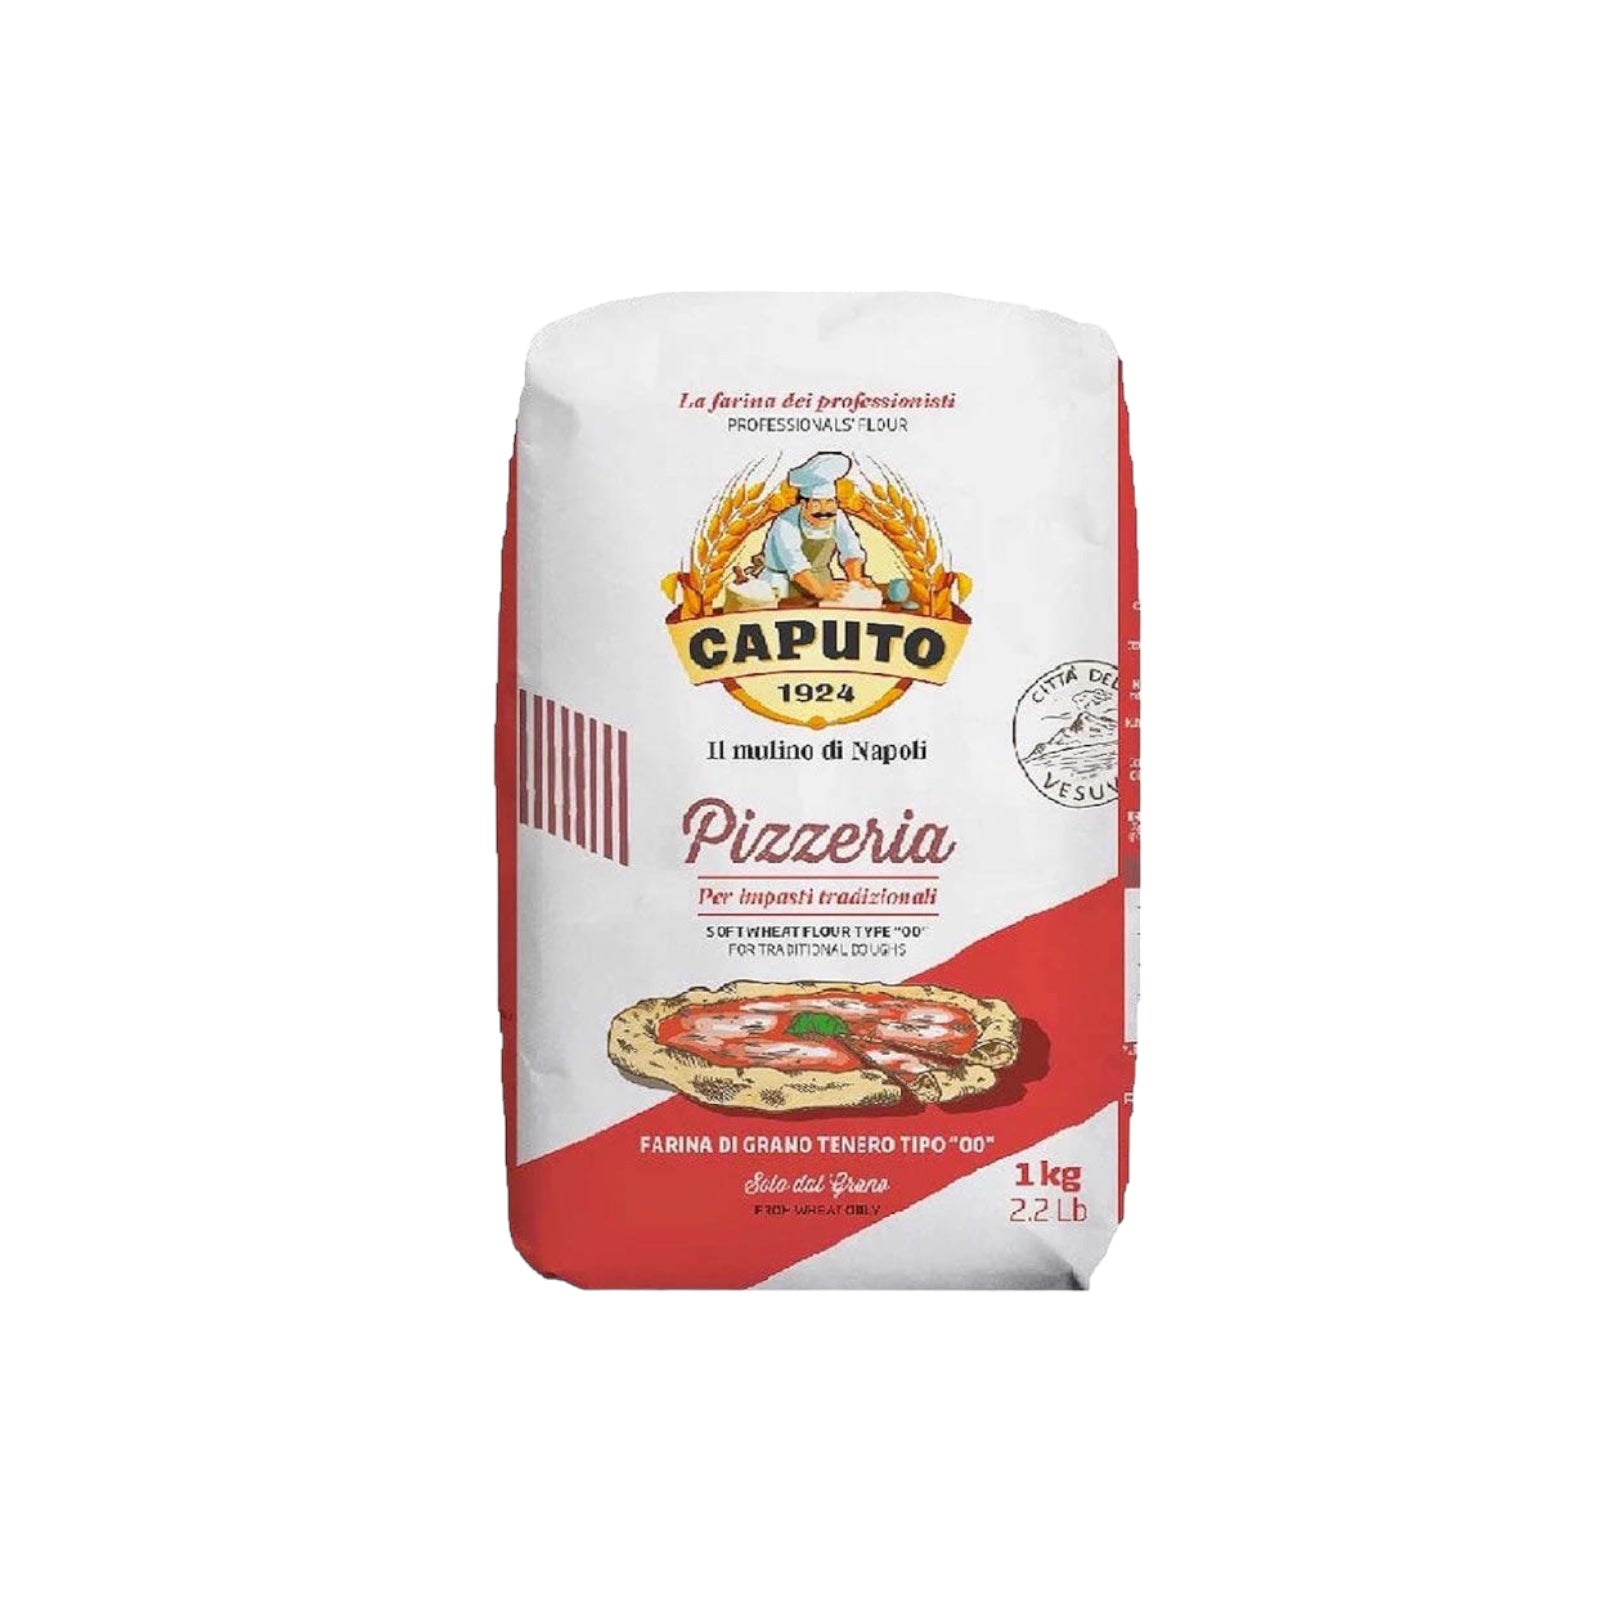 Caputo Flour “Pizzeria” Type 00 2.2lb